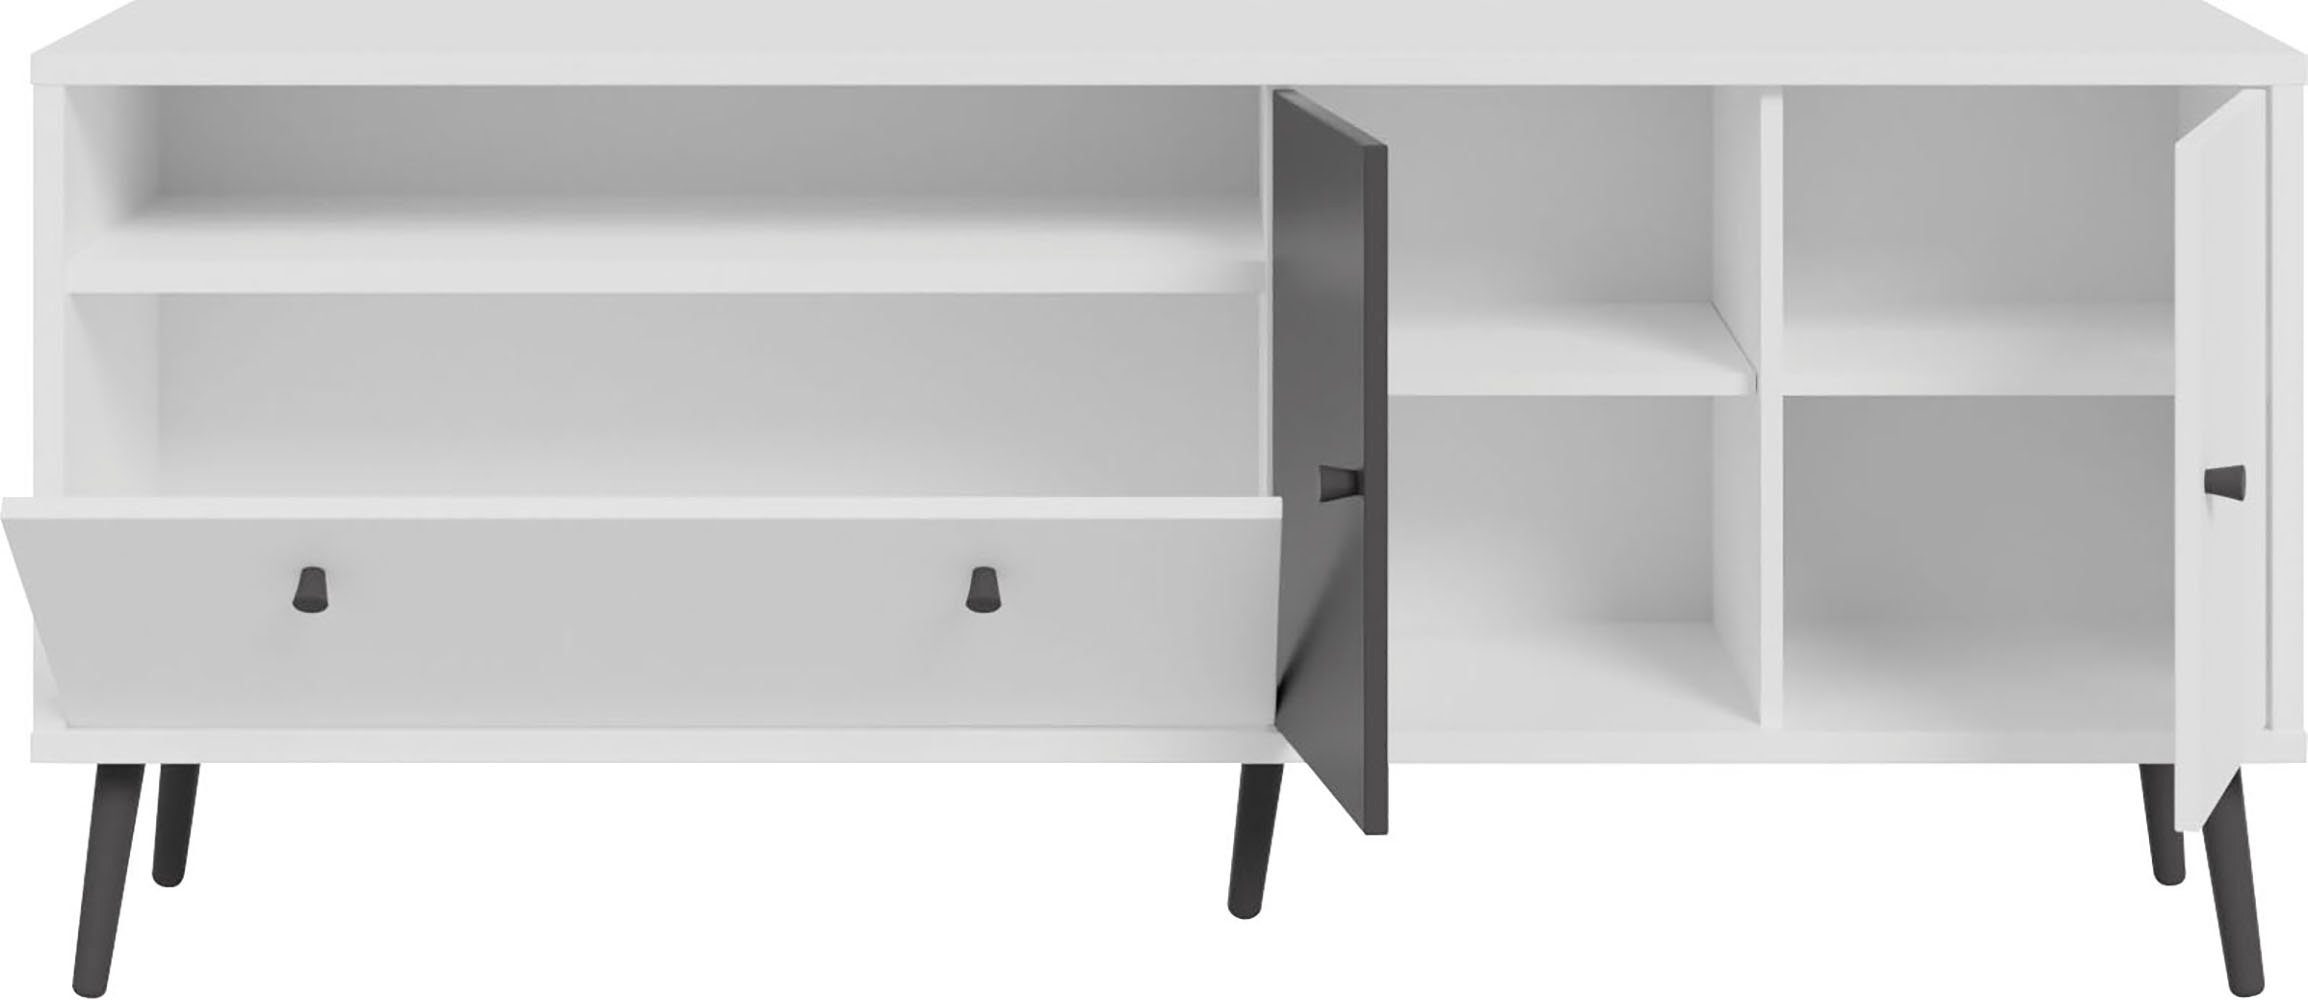 neue TV-Board geniale by EasyKlix Wolfram Harllson FORTE Forte, die Möbel aufzubauen Art Grau Weiß/Uni